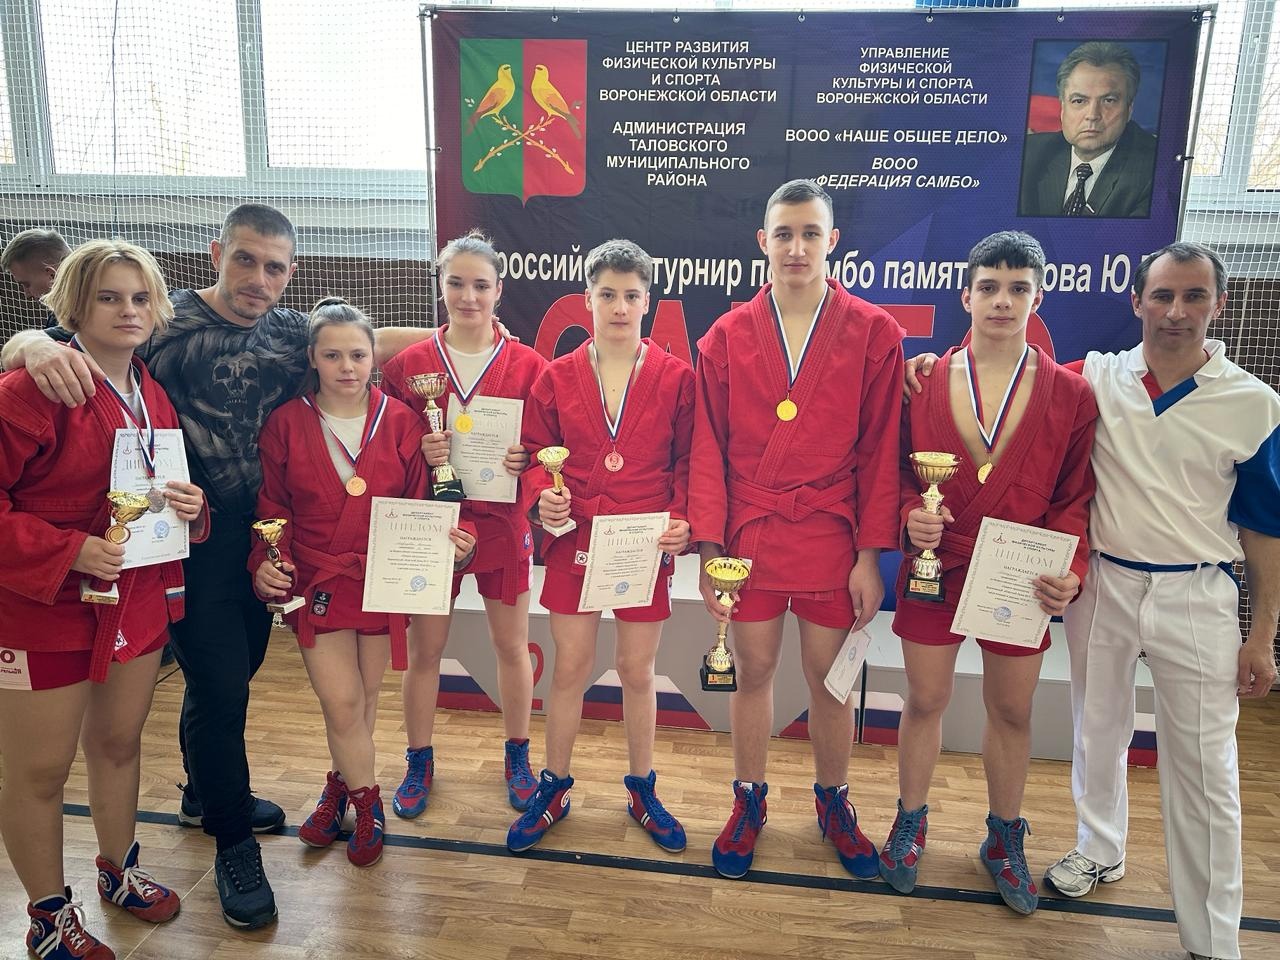   Поздравляем всех победителей и их тренеров Константина Гелбахиани, Александра Корчагина и Владимира Тихомирова.